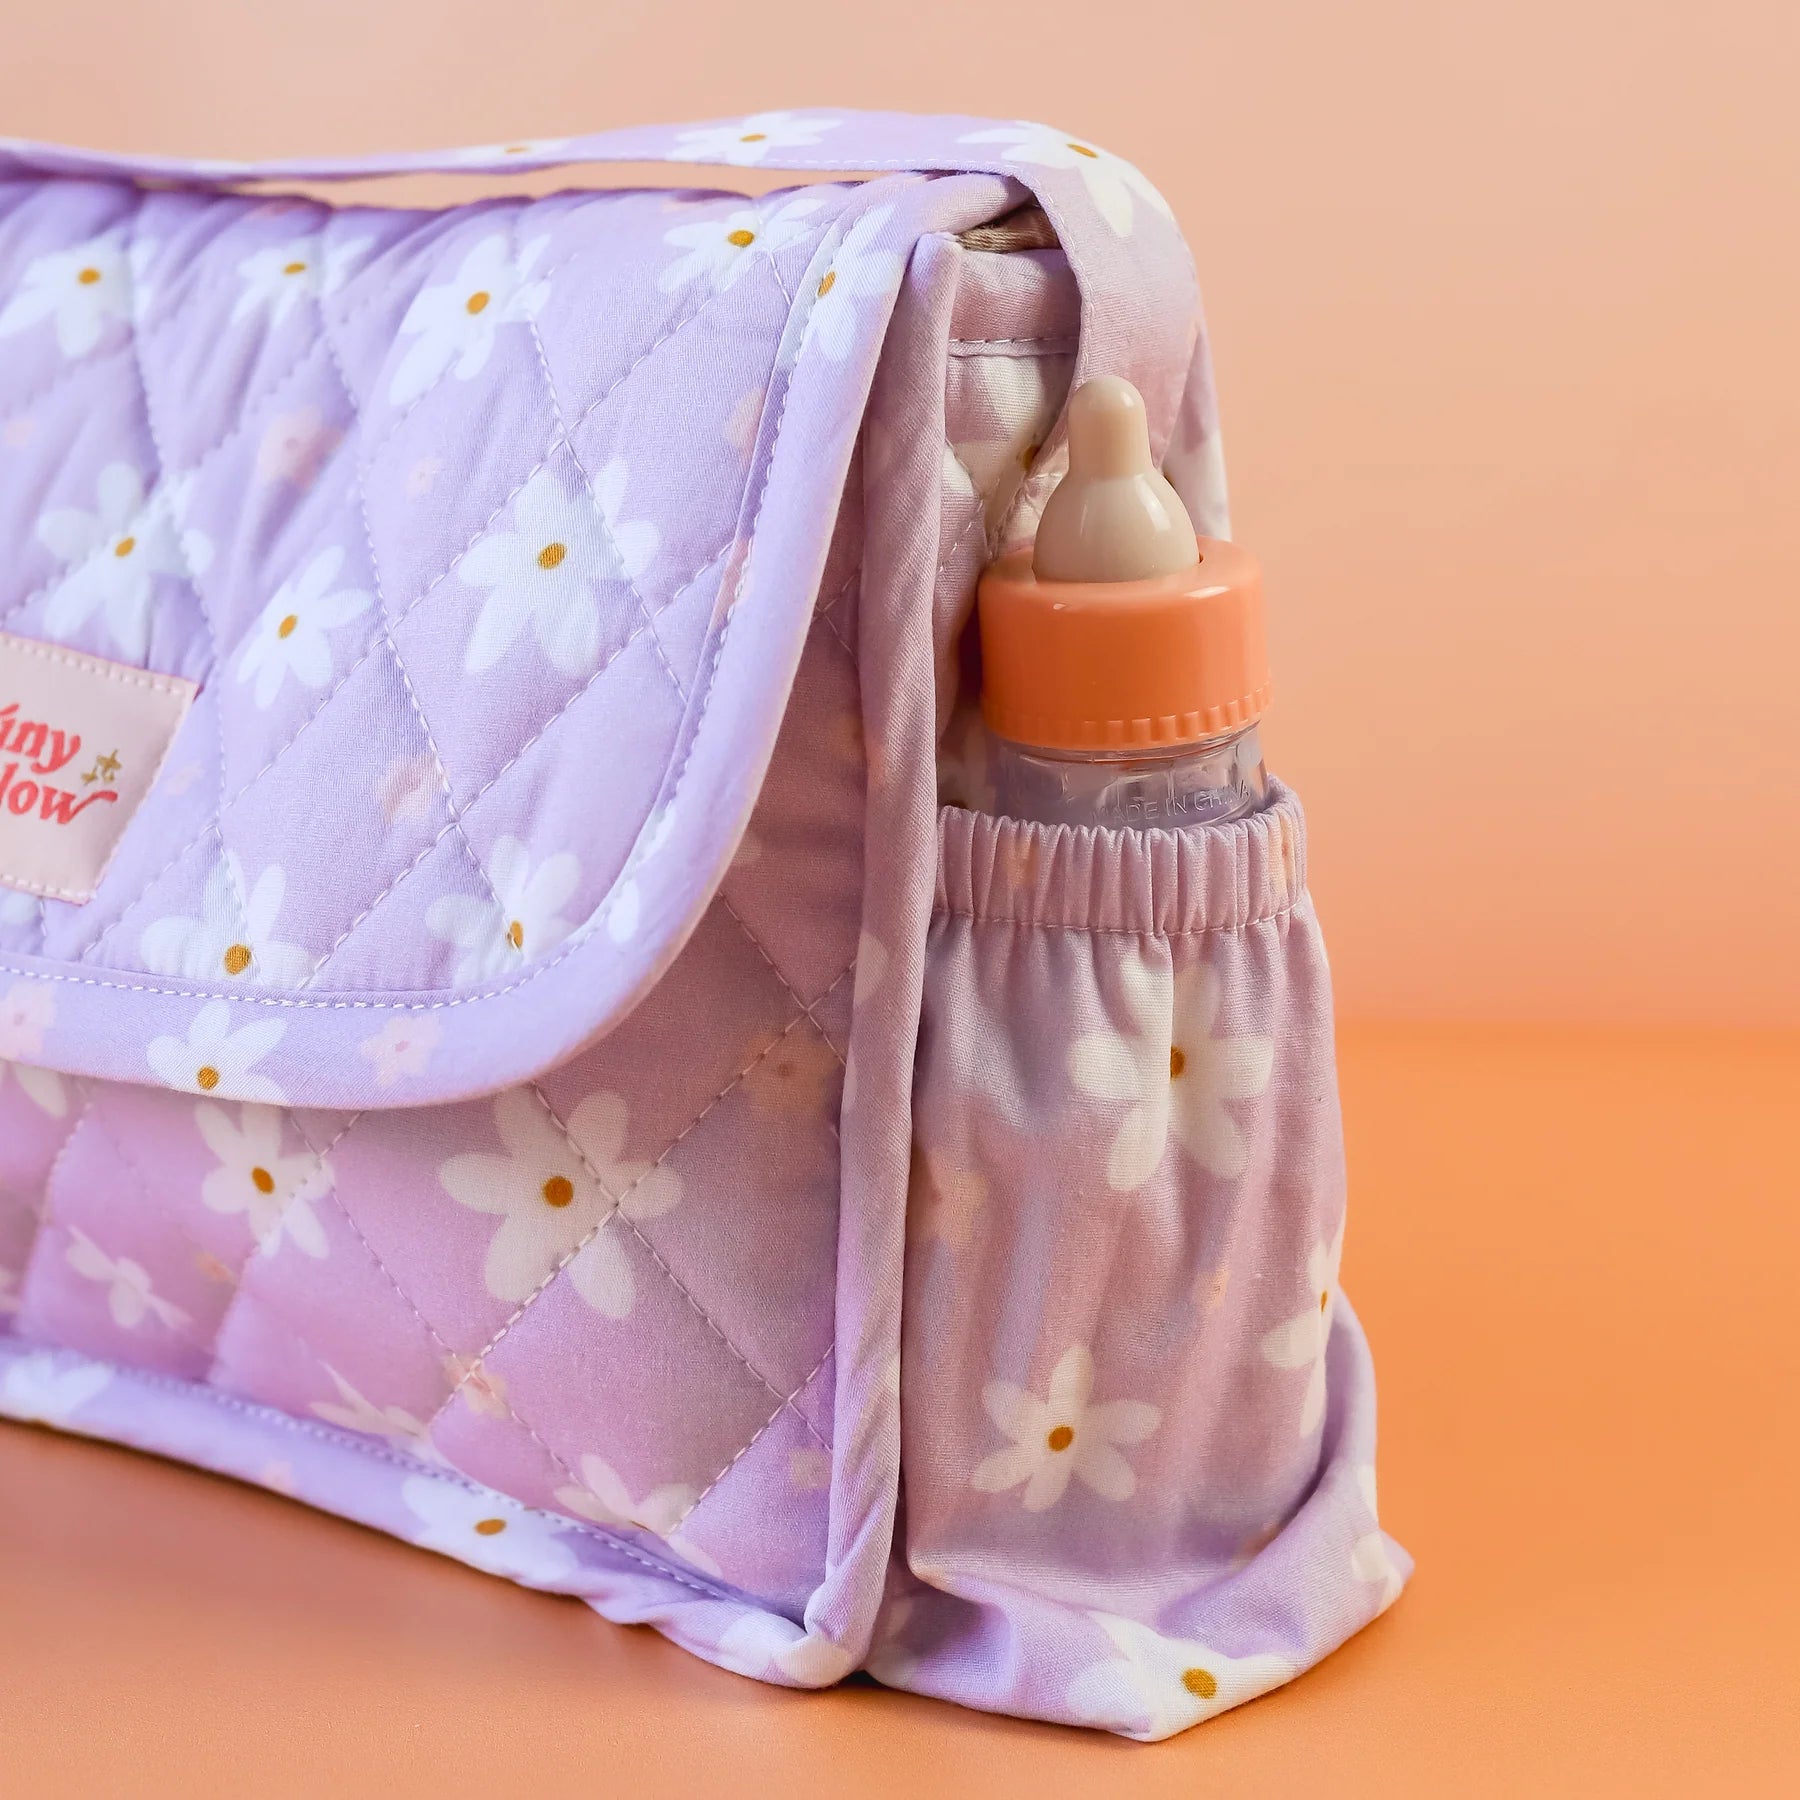 Tiny Harlow Doll Nappy Bag Set – Lilac Daisy